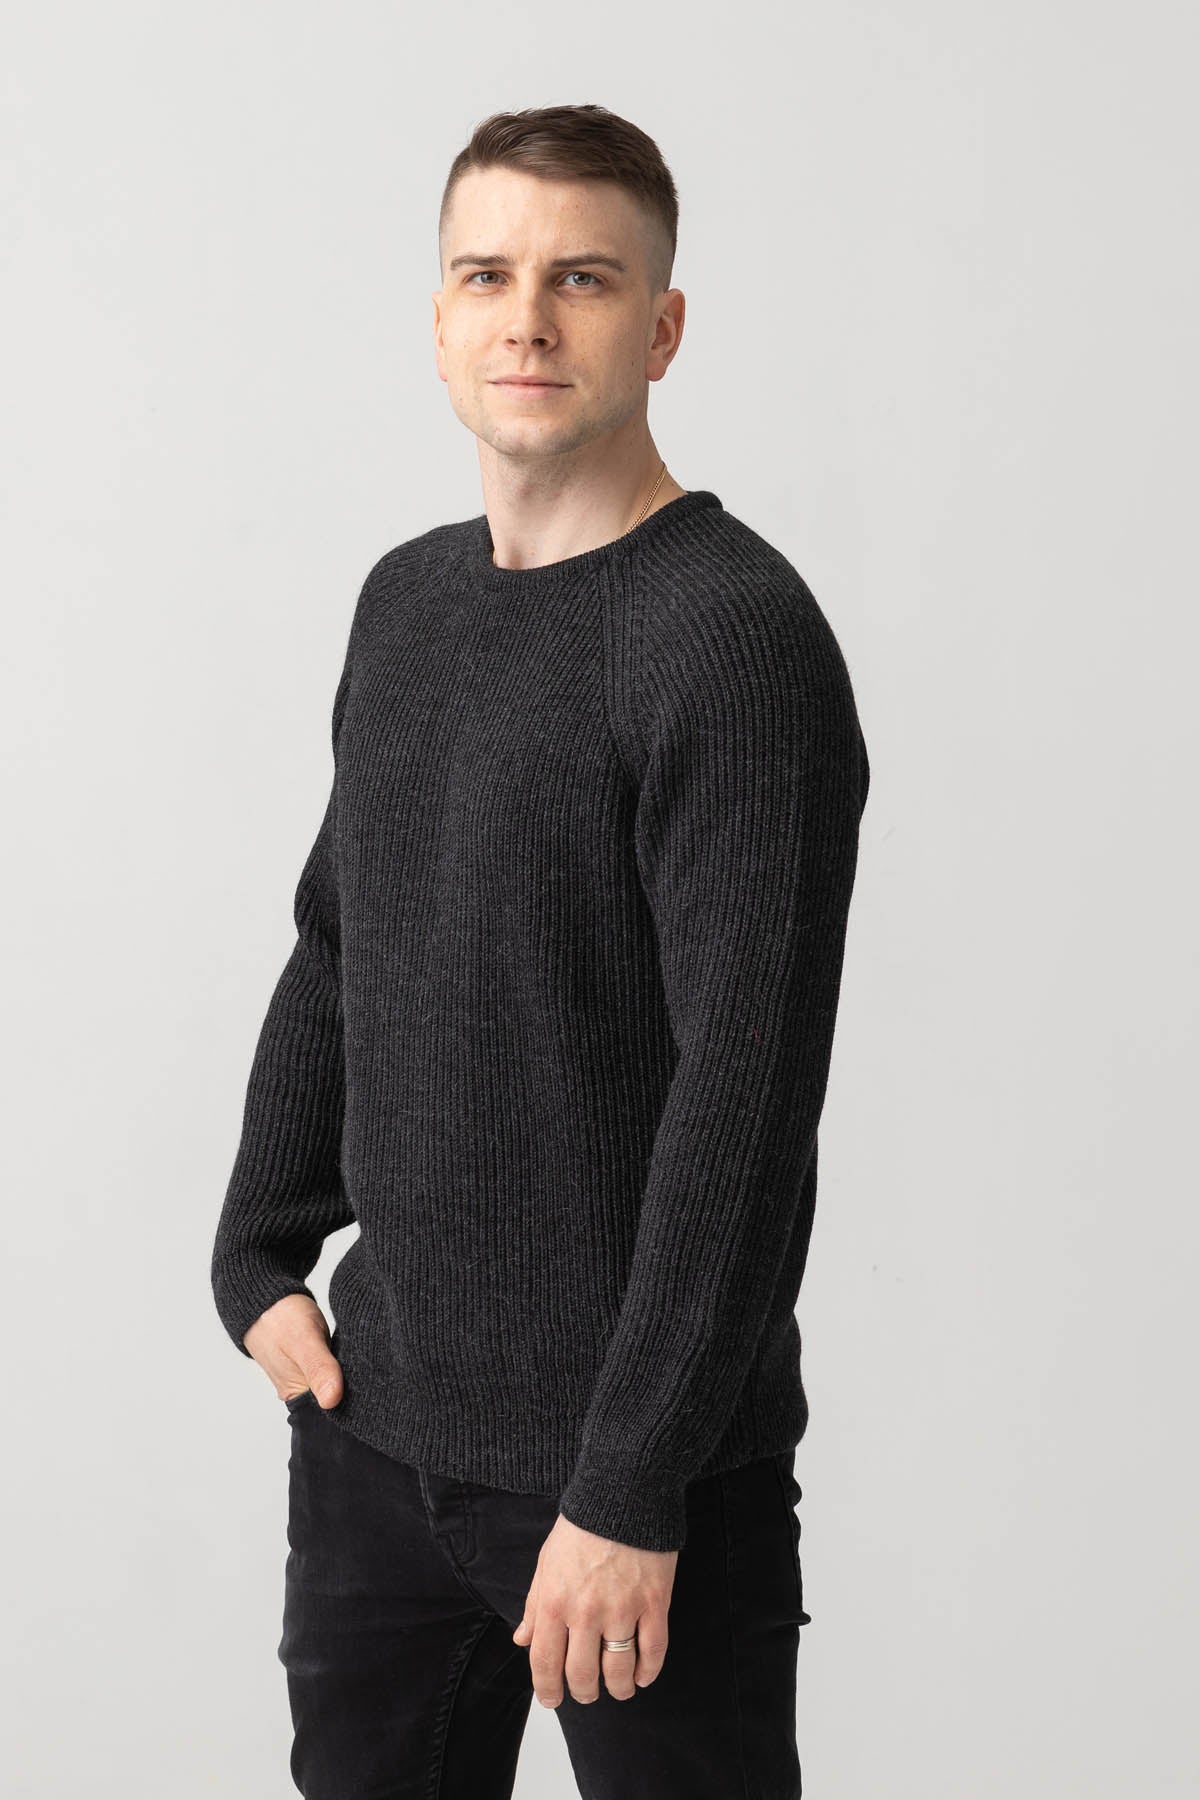 Colca sweater - graphite